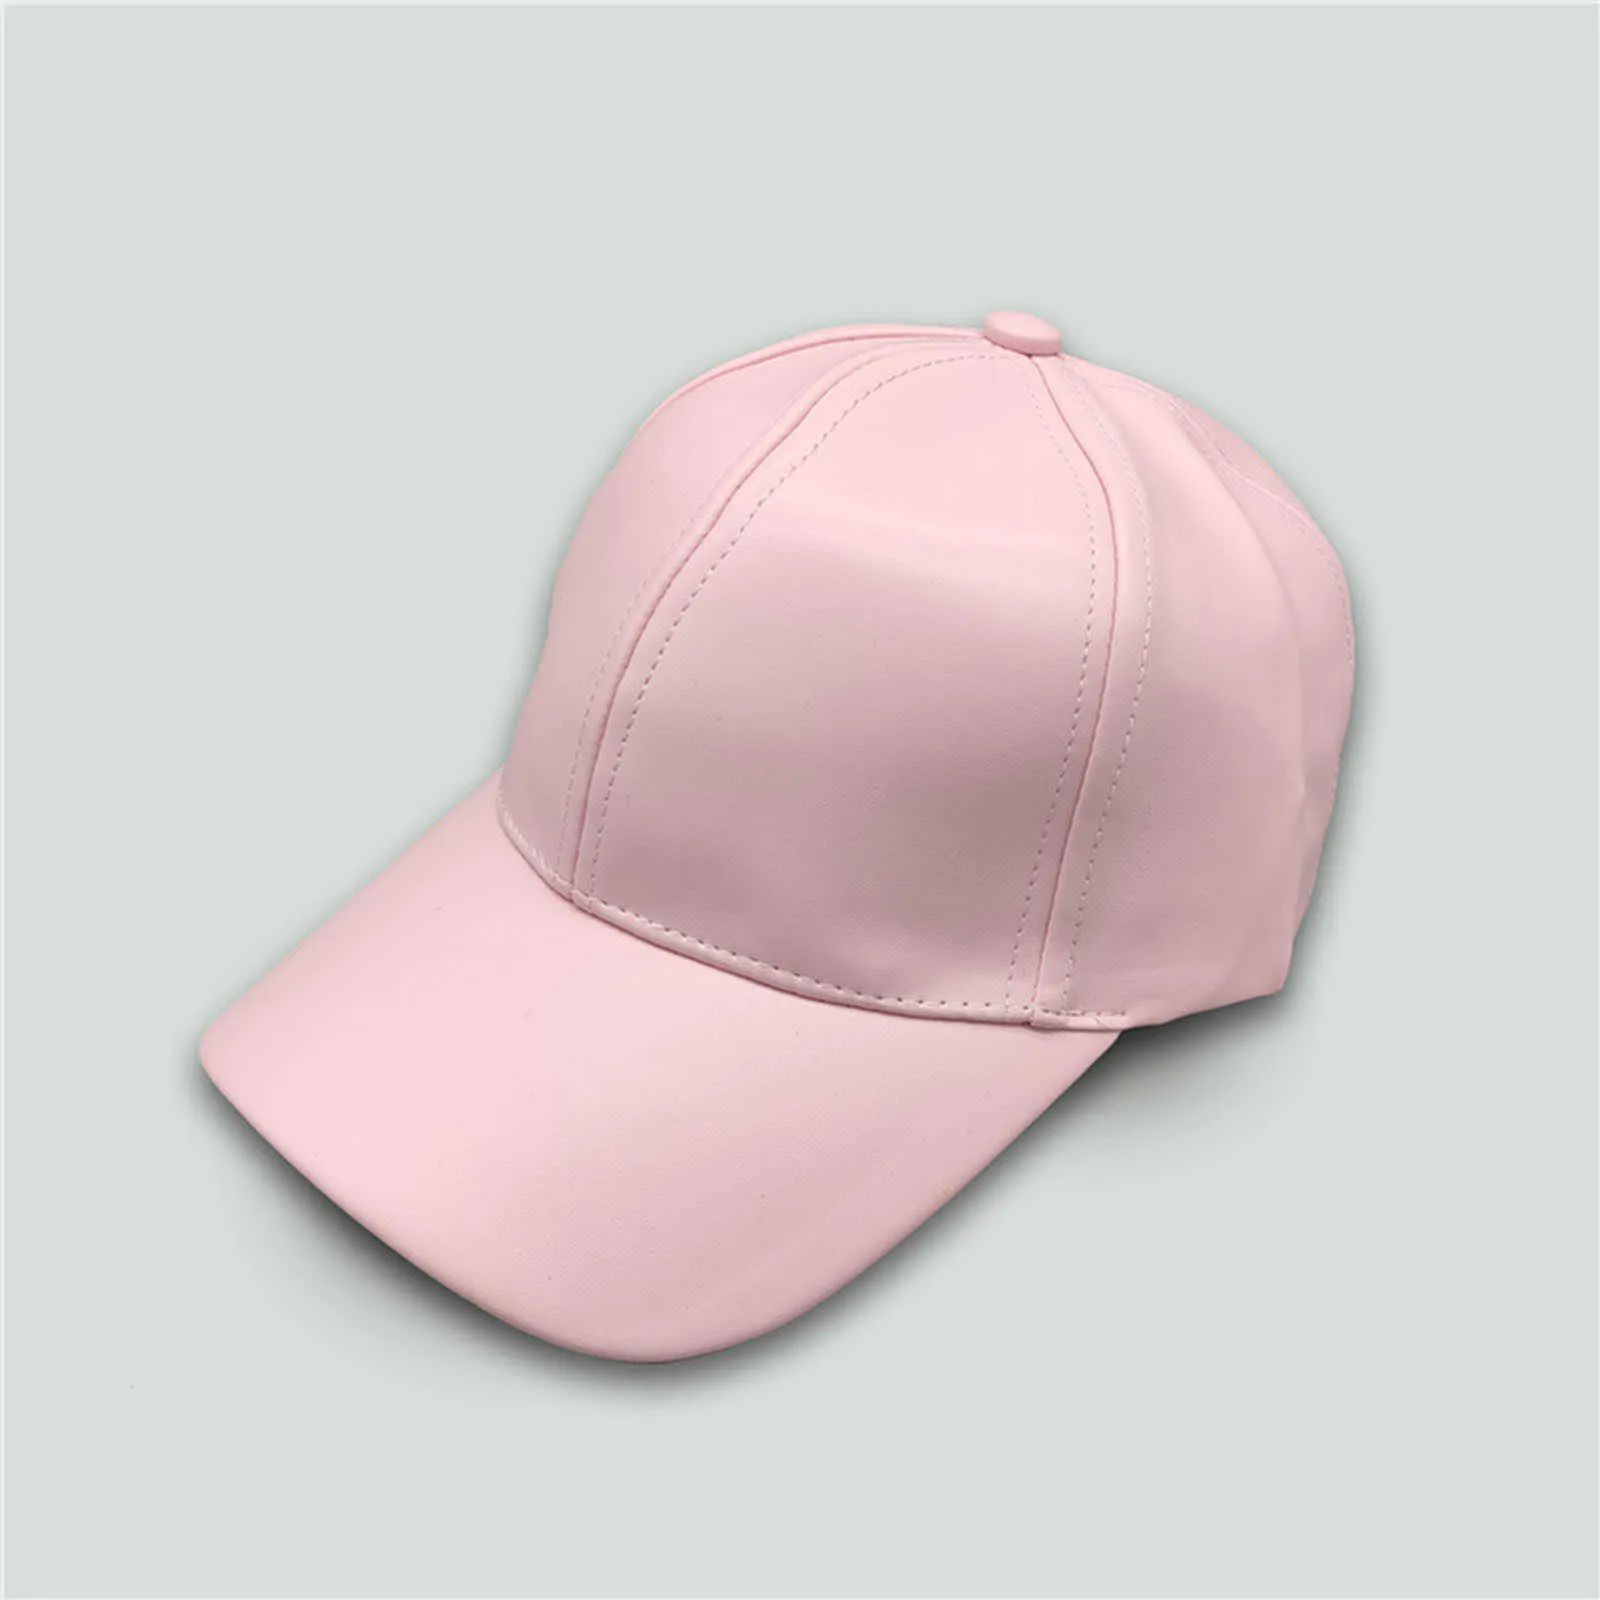 Top kapaklar erkek kadın beyzbol şapkası çok erkek kadın beyzbol şapkası unisex şapka sonrası sezon g230201